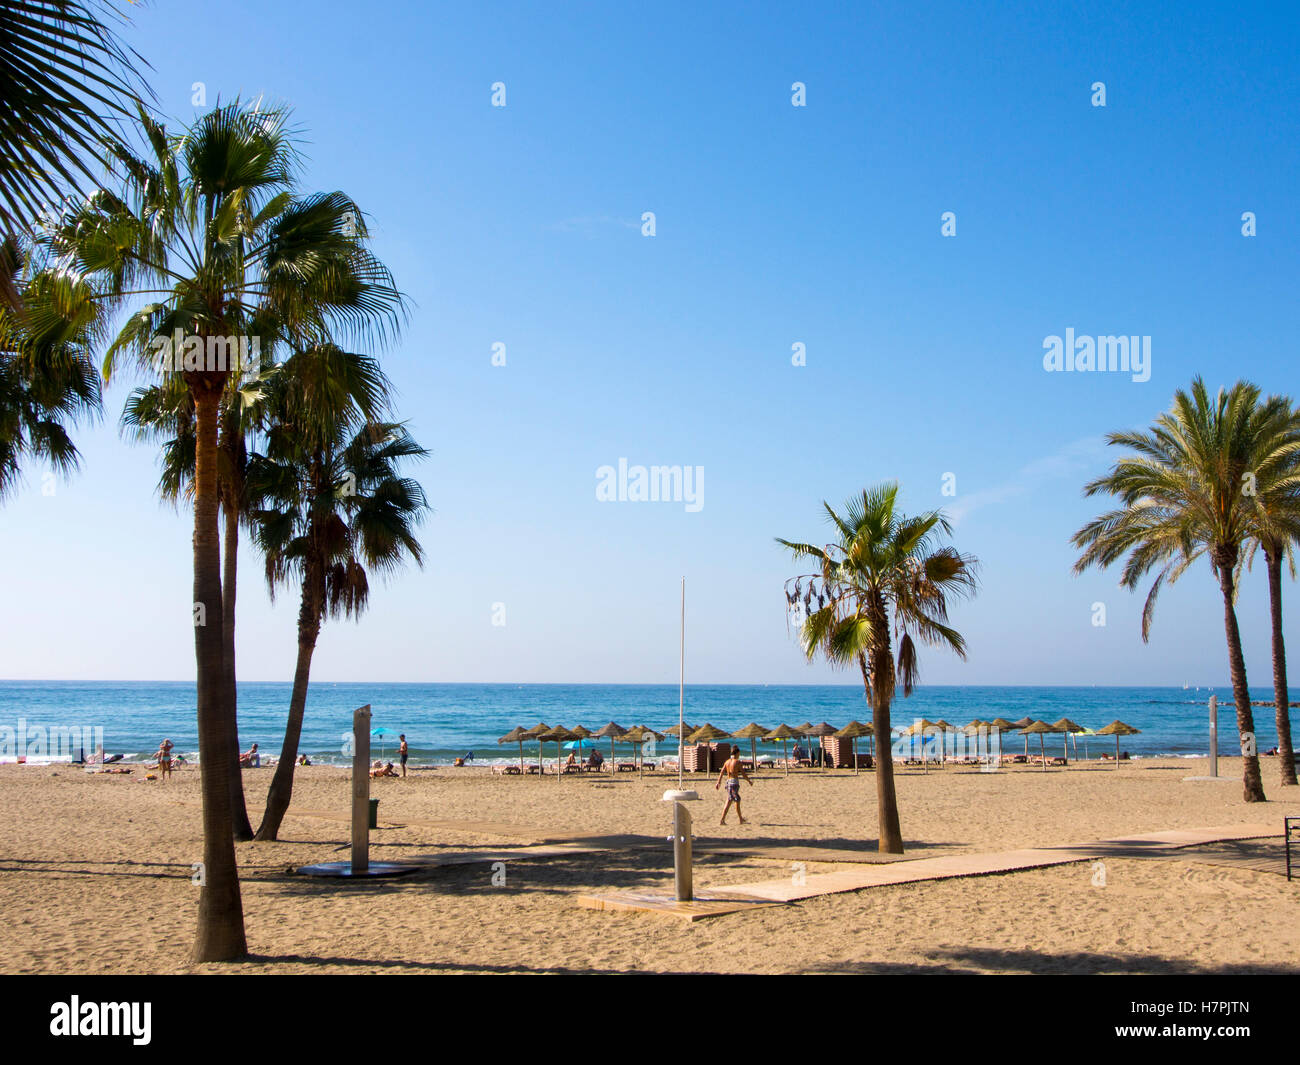 La Bajadilla beach. Marbella, Malaga province, Costa del Sol, Andalusia, Spain Europe Stock Photo